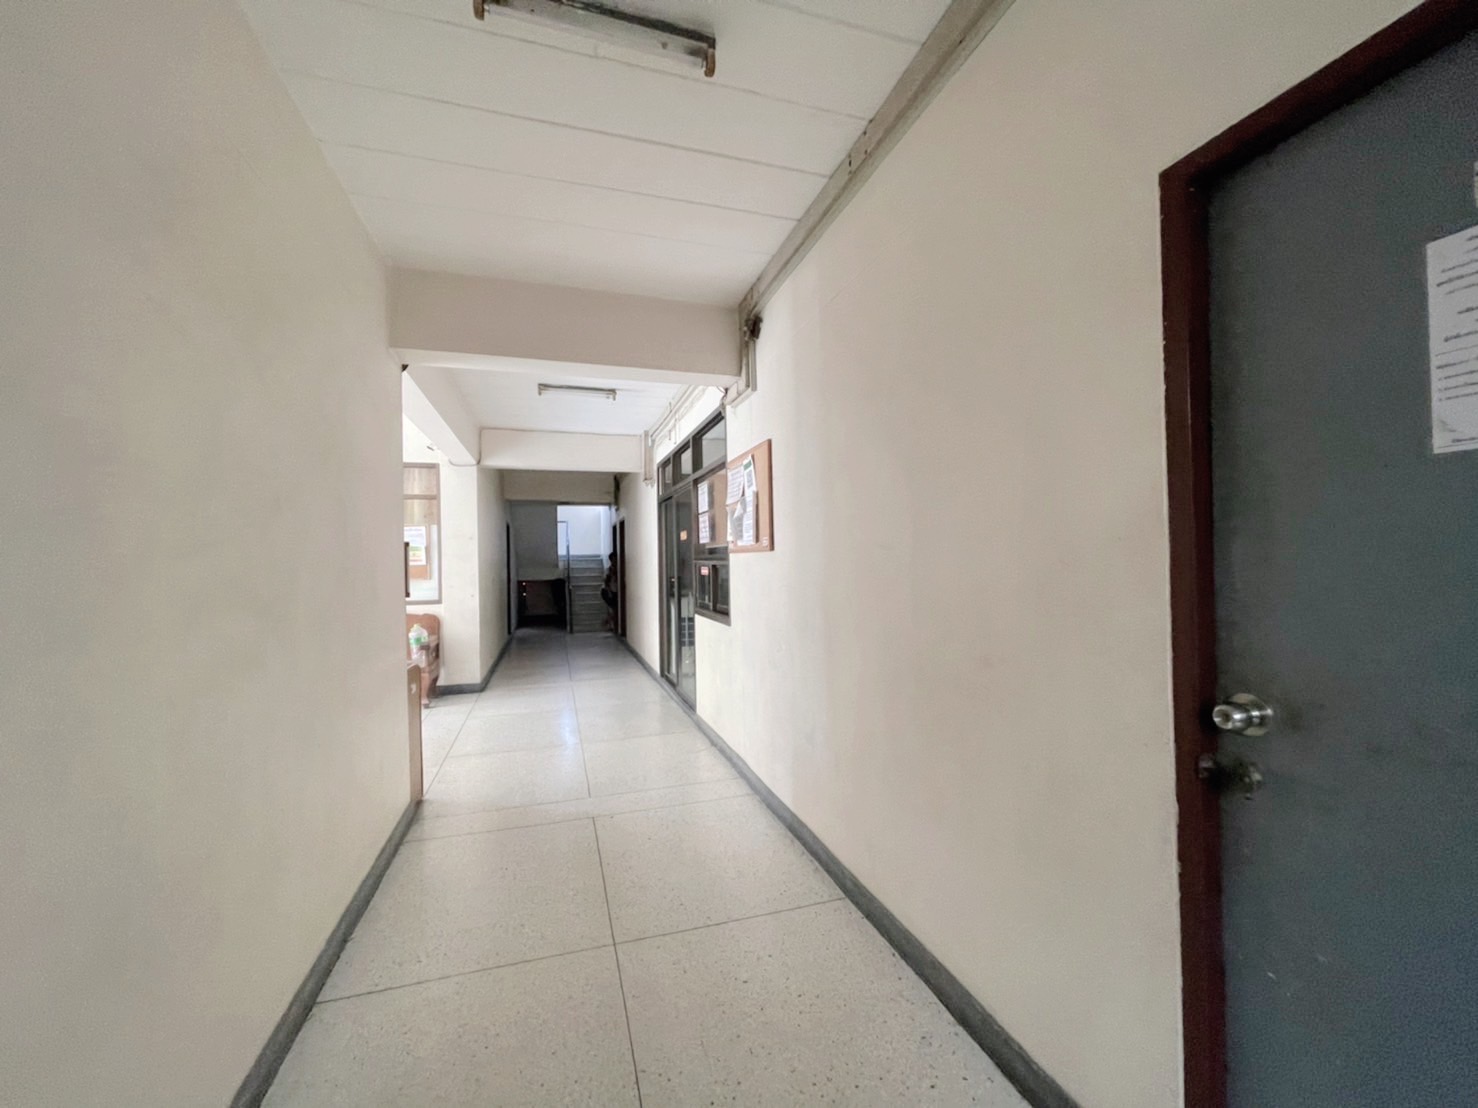 อพาร์ทเม้นท์ 5 ชั้น 46 ห้อง ใกล้รถไฟฟ้า MRTหัวหมาก และ โรงพยาบาลสมิติเวช ศรีนครินทร์